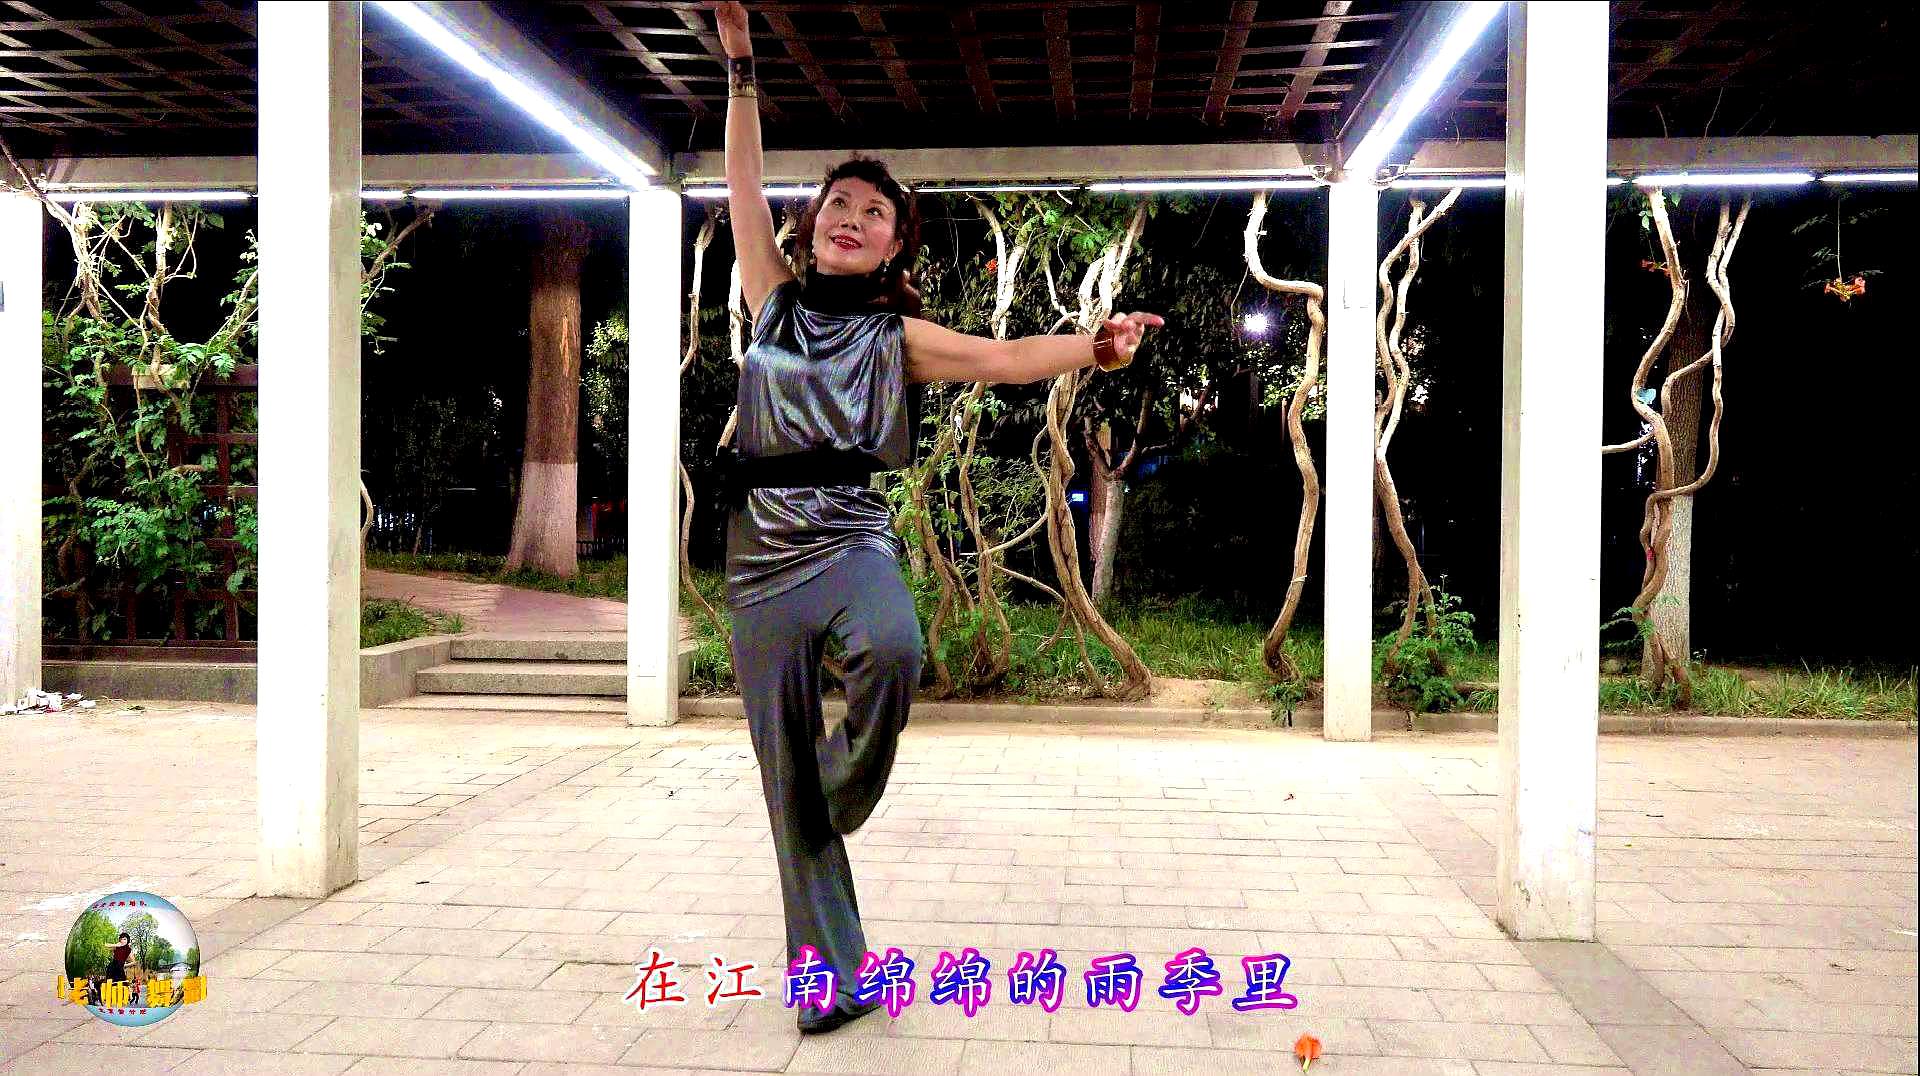 紫竹院广场舞《江南雨》,杜老师表情丰富,舞姿优雅、舒展!